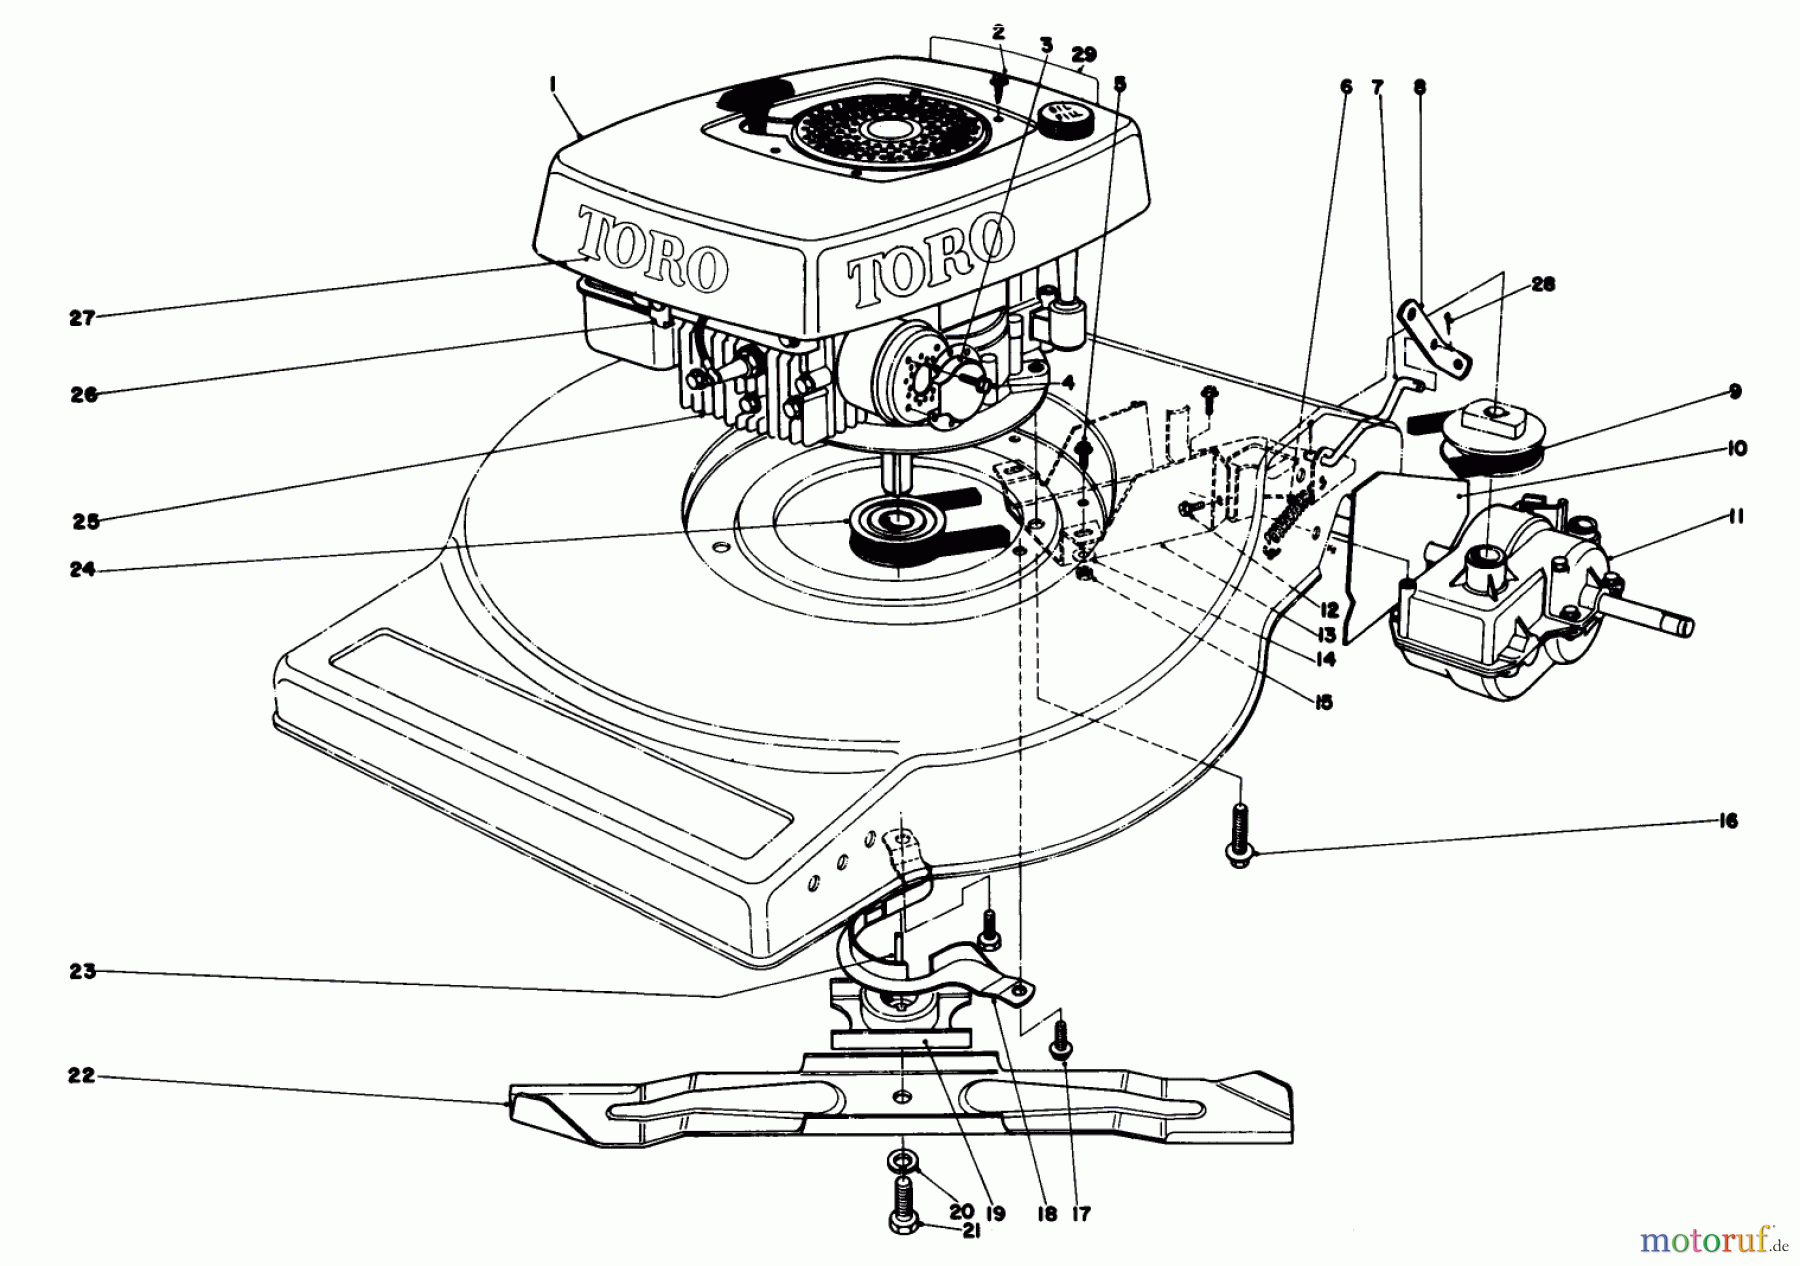  Toro Neu Mowers, Walk-Behind Seite 1 16930 - Toro Lawnmower, 1980 (0000001-0999999) ENGINE ASSEMBLY (MODEL NO. 16940)